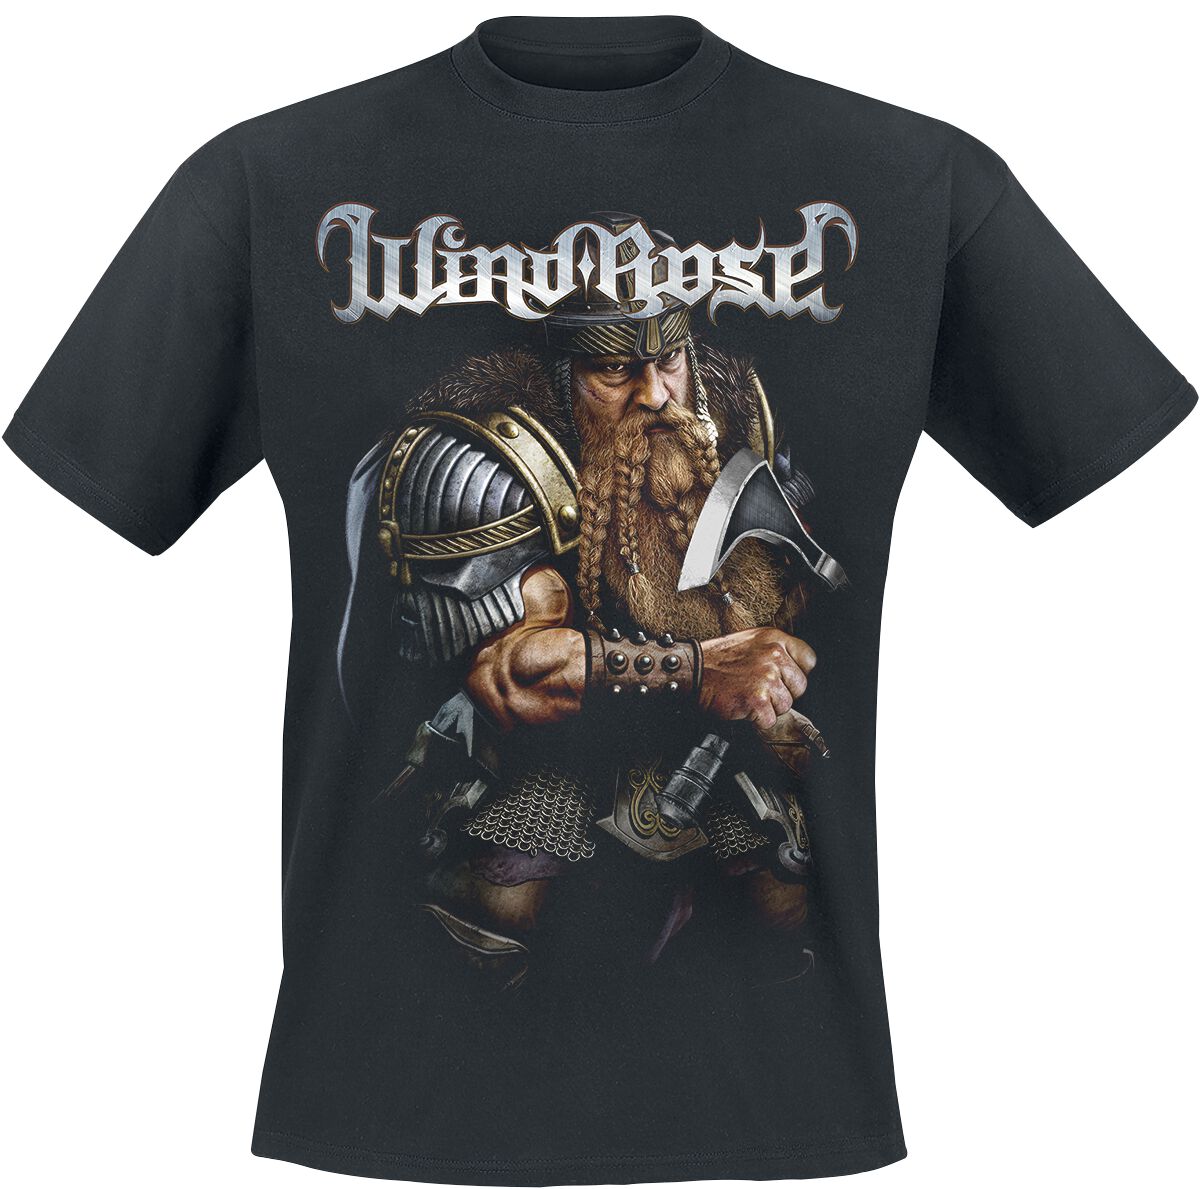 Wind Rose T-Shirt - Dwarf - S bis 4XL - für Männer - Größe 4XL - schwarz  - Lizenziertes Merchandise!